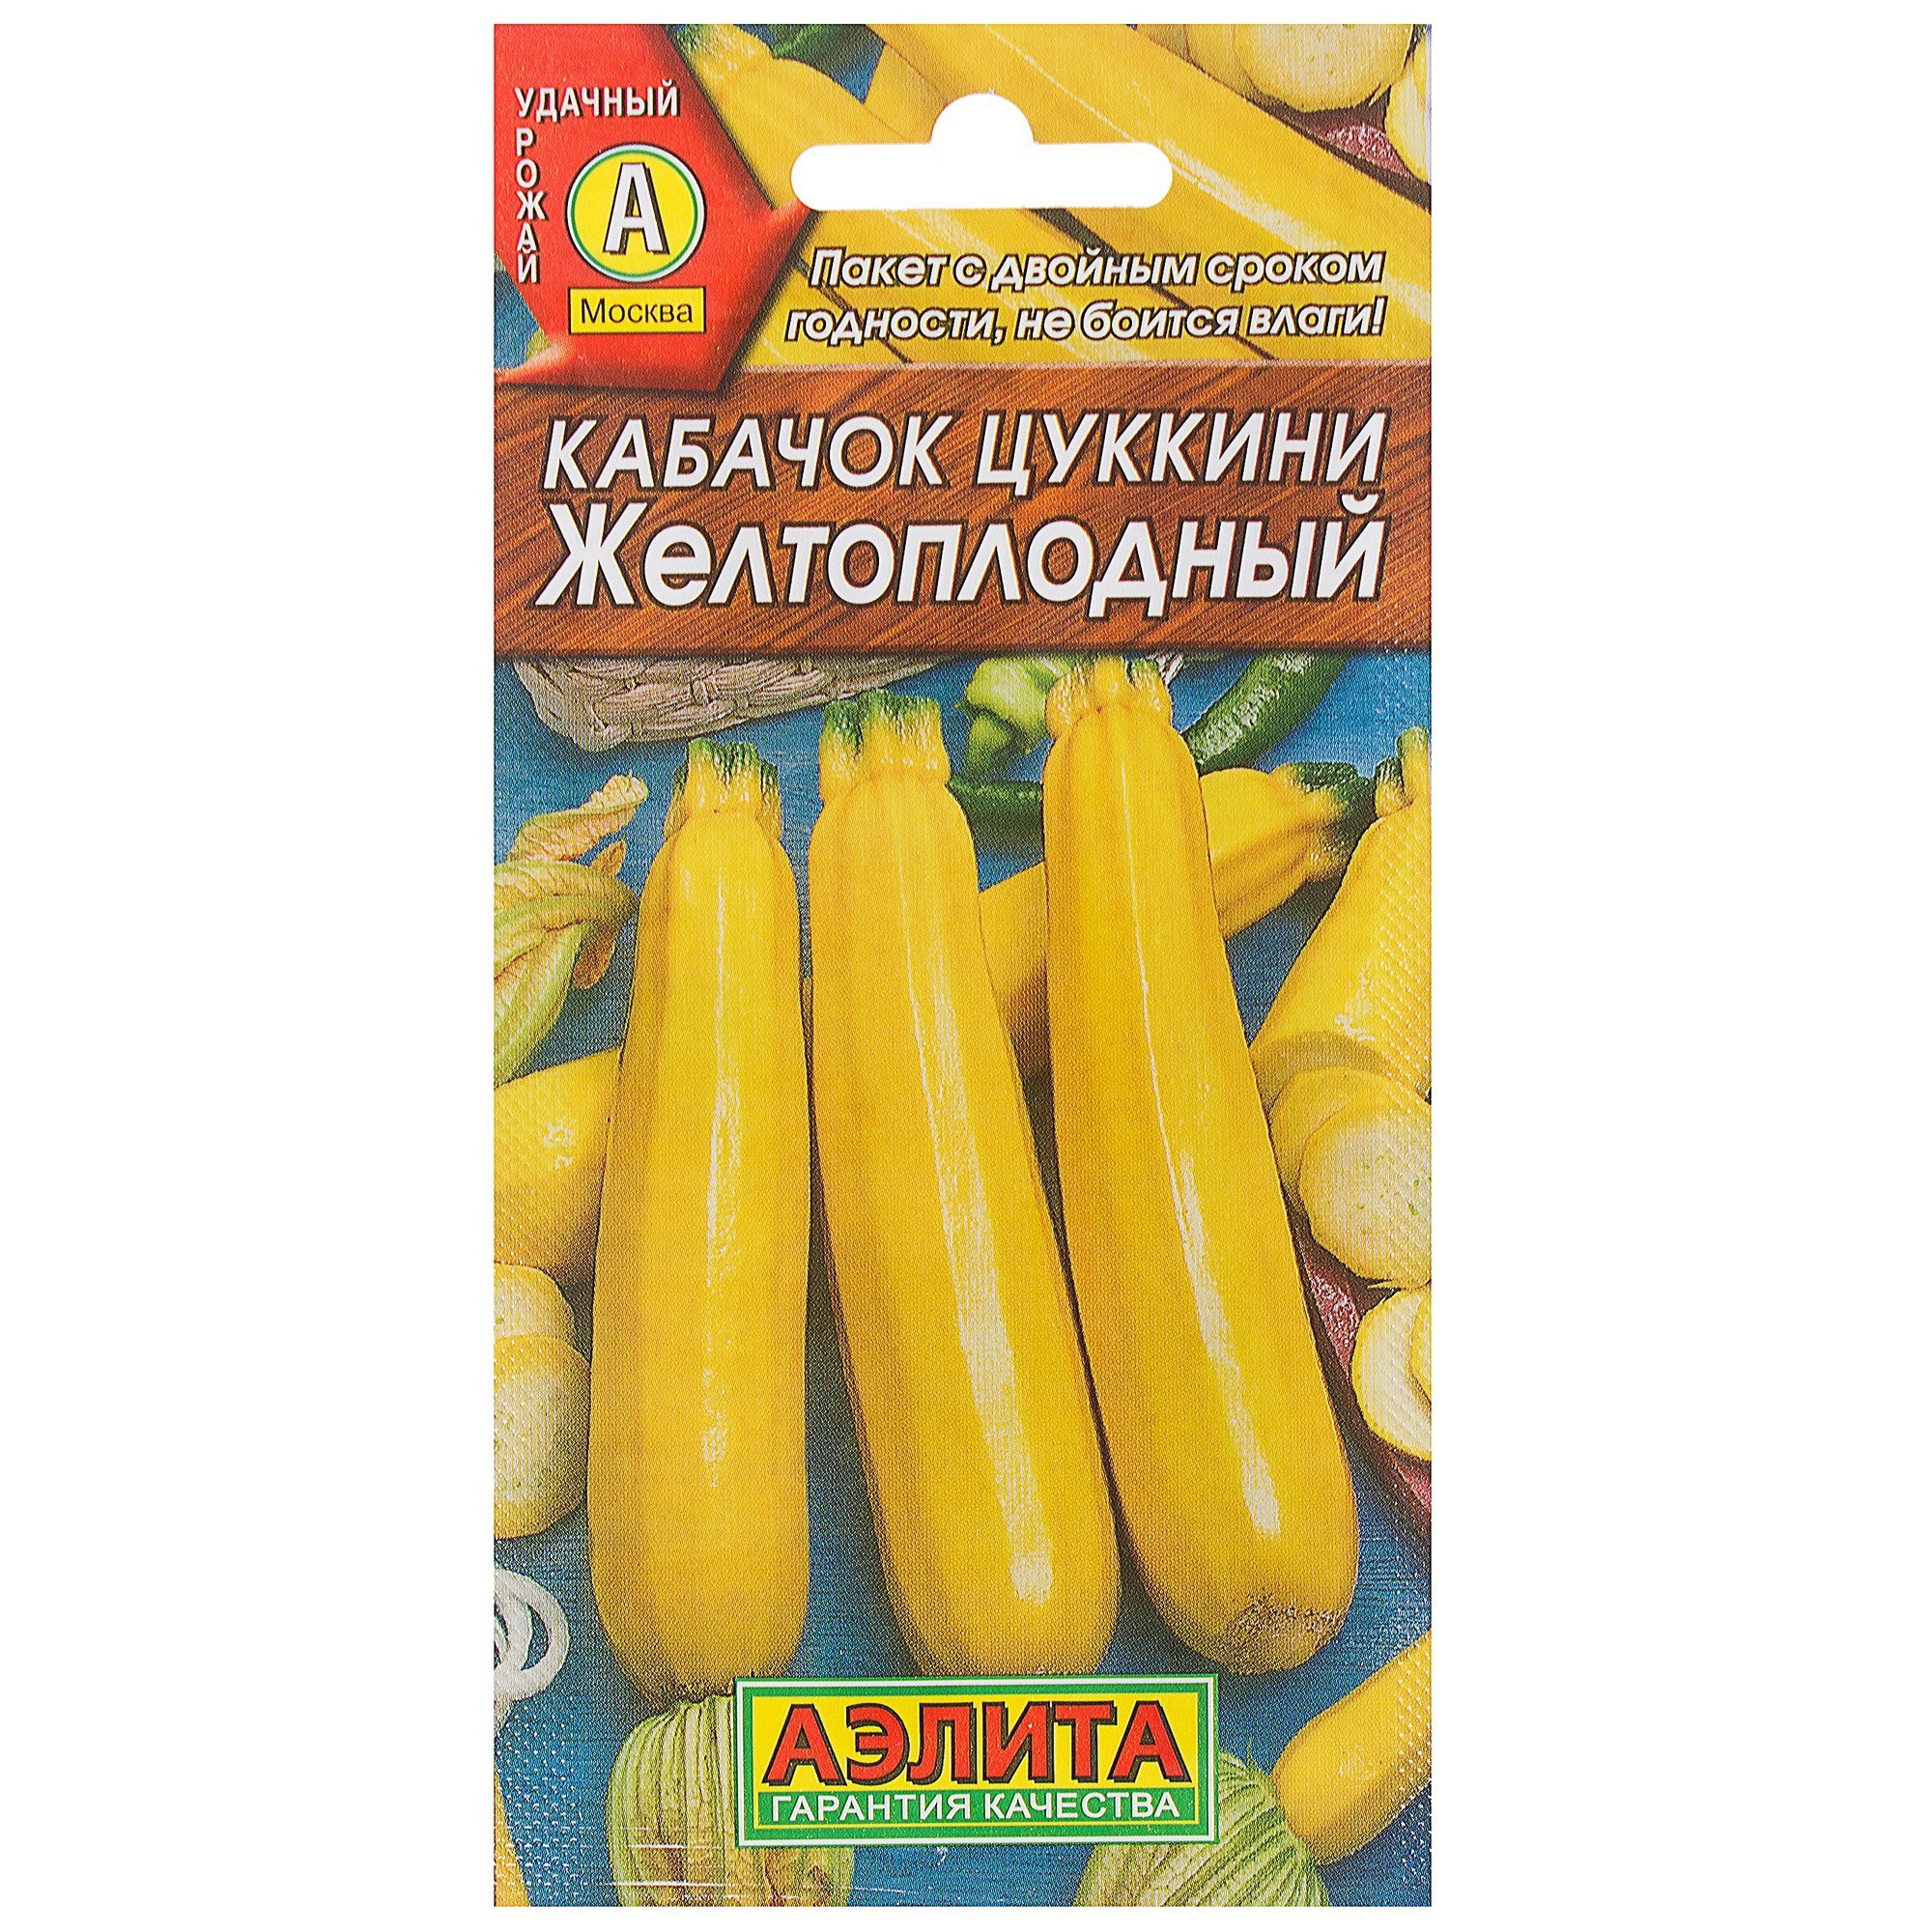 Семена Кабачок-цукини «Жёлтоплодный» в Ярославле – купить по низкой цене винтернет-магазине Леруа Мерлен